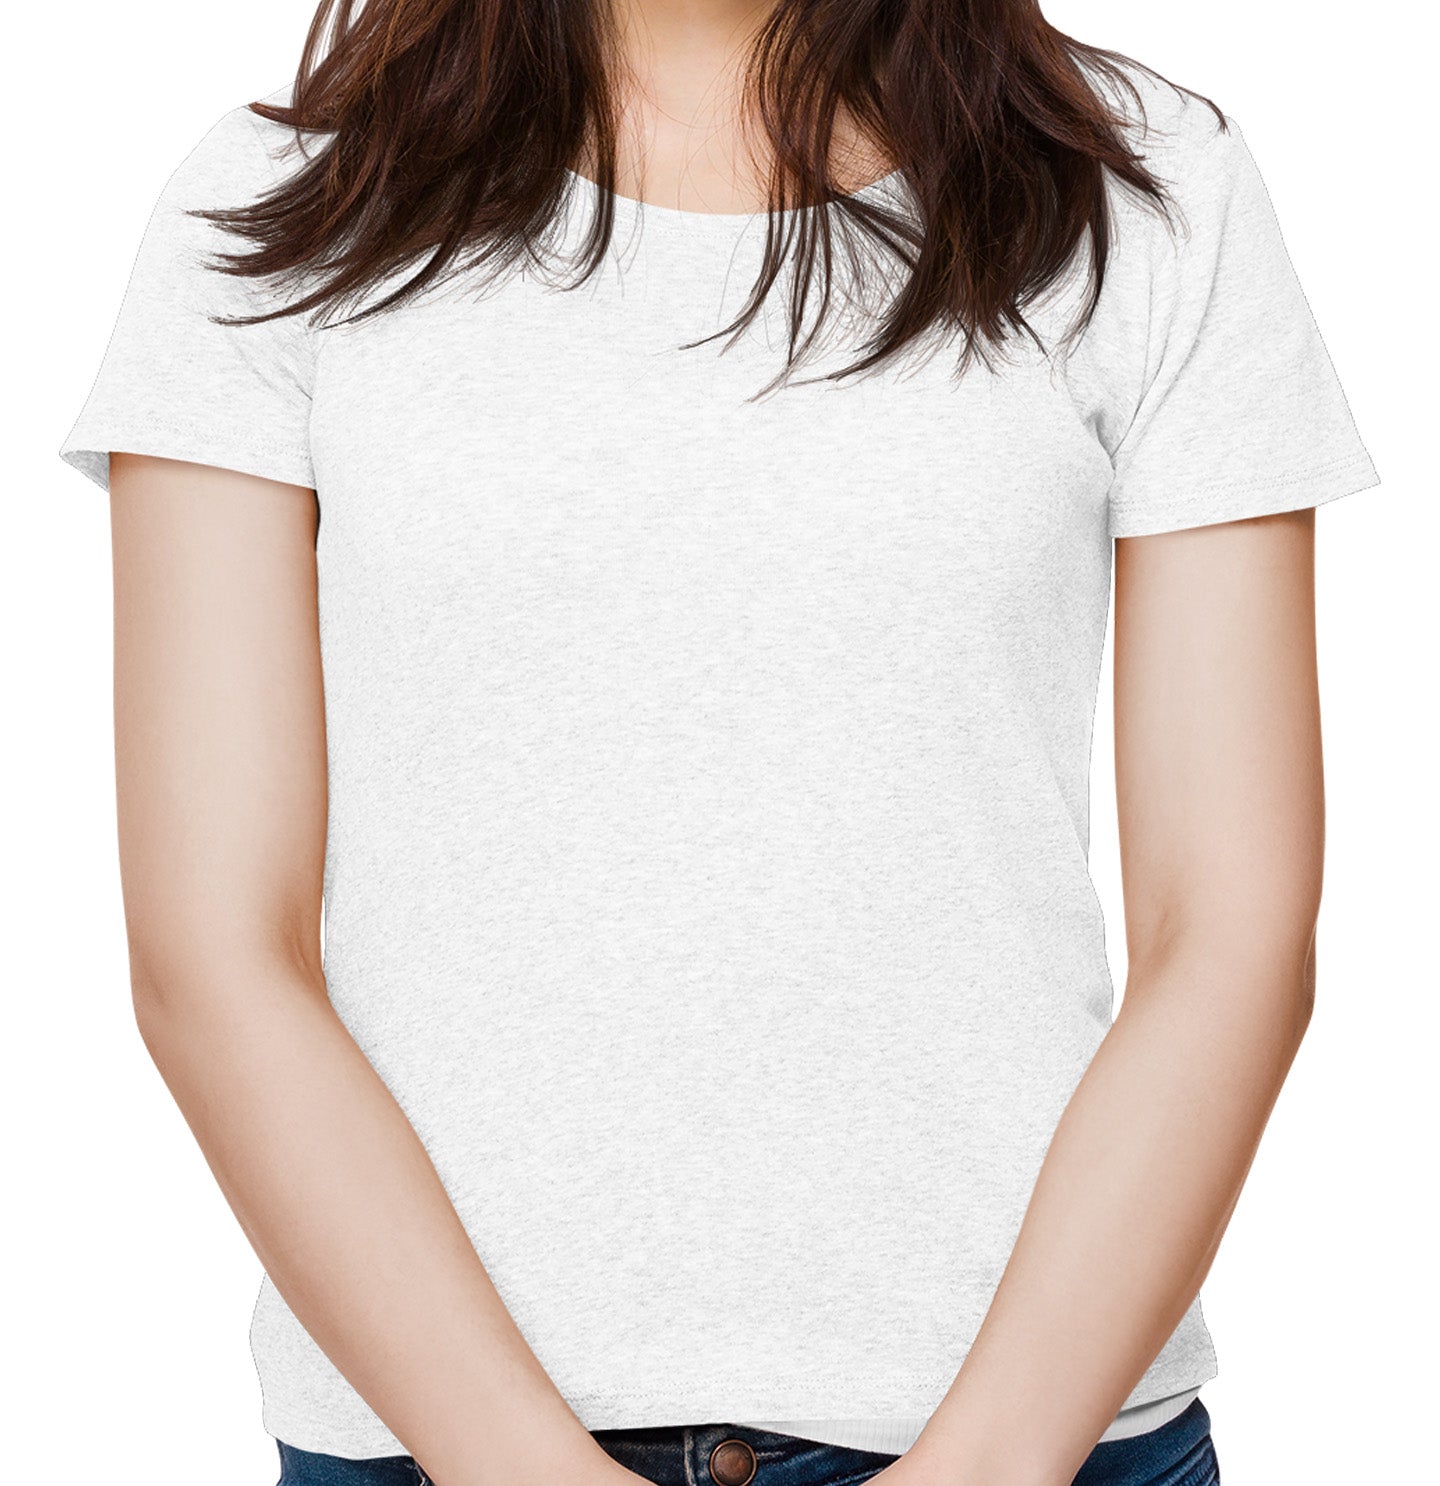 Golden Mom Illustration - Personalized Custom Women's Tri-Blend T-Shirt